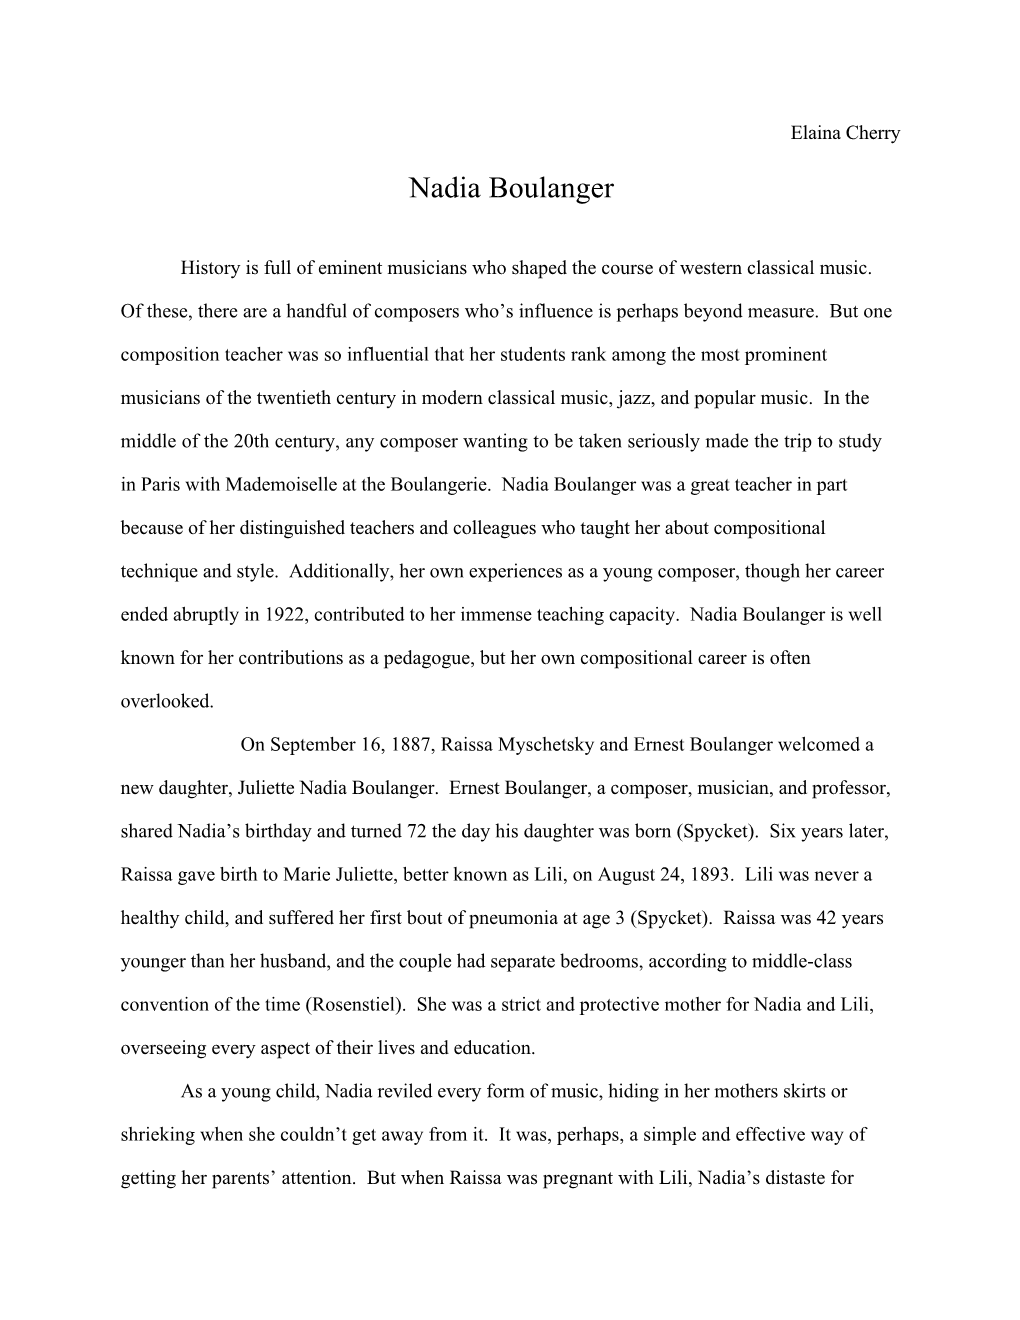 Nadia Boulanger.Cwk